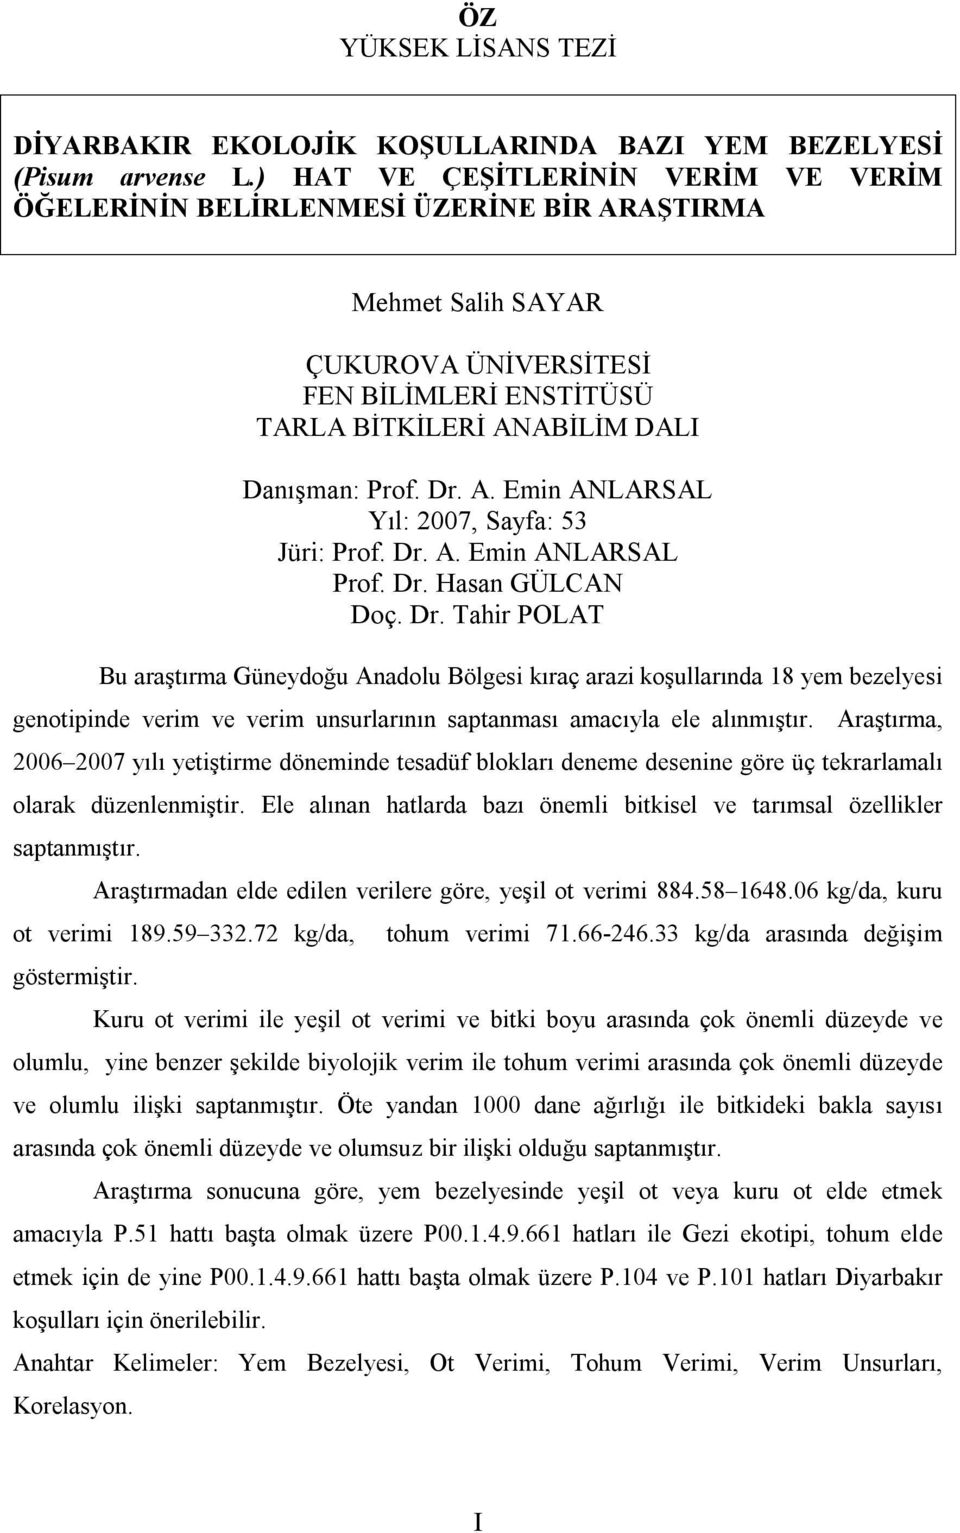 Dr. A. Emin ANLARSAL Prof. Dr. Hasan GÜLCAN Doç. Dr. Tahir POLAT Bu araştırma Güneydoğu Anadolu Bölgesi kıraç arazi koşullarında 18 yem bezelyesi genotipinde verim ve verim unsurlarının saptanması amacıyla ele alınmıştır.